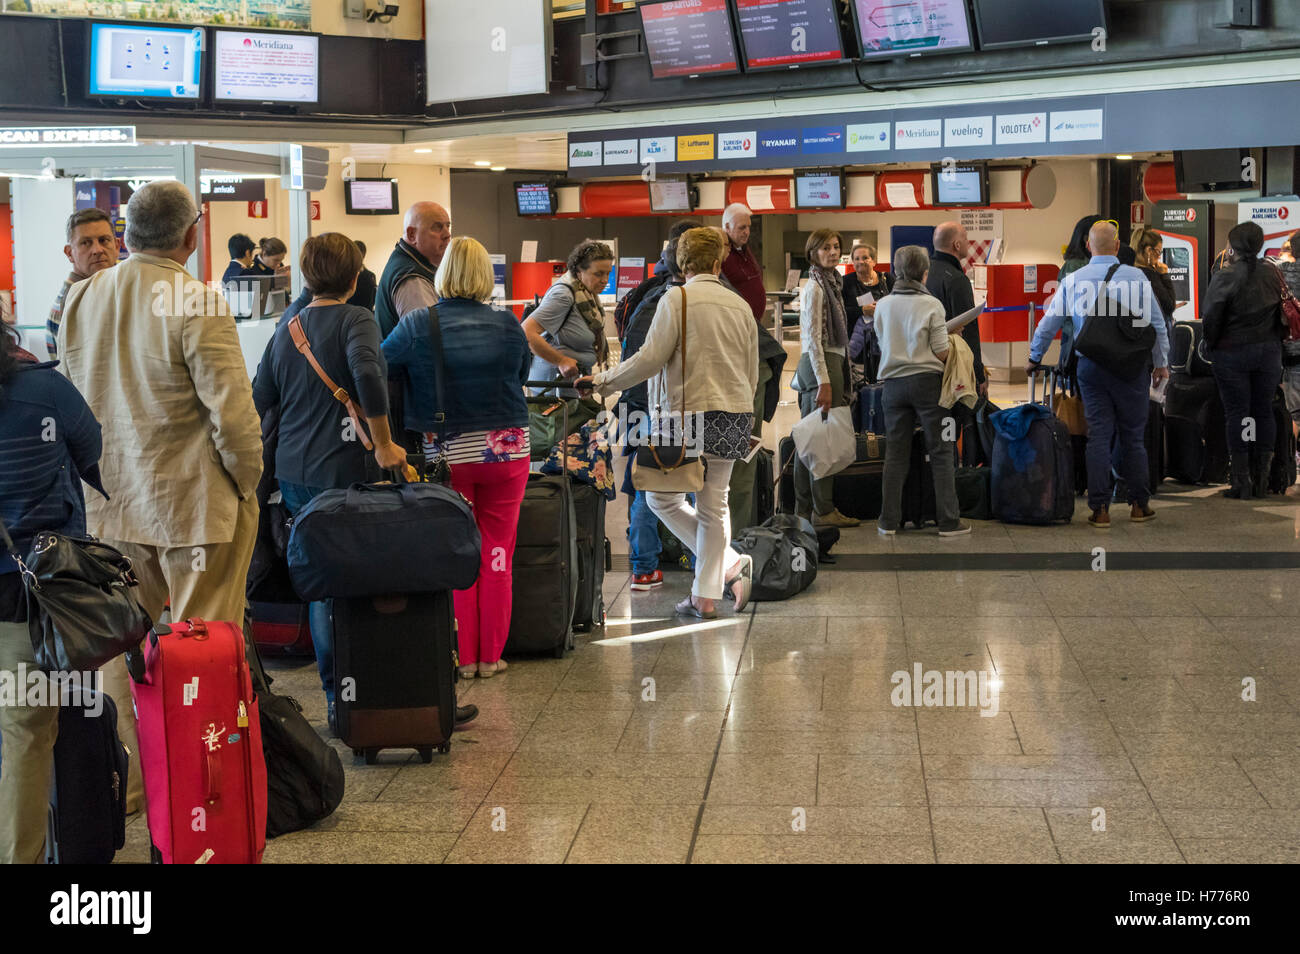 Passagiere mit Gepäck Queueing für Check-in auf der Passenger Terminal des internationalen Flughafen Genua Cristoforo Colombo. Genua, Italien. Stockfoto